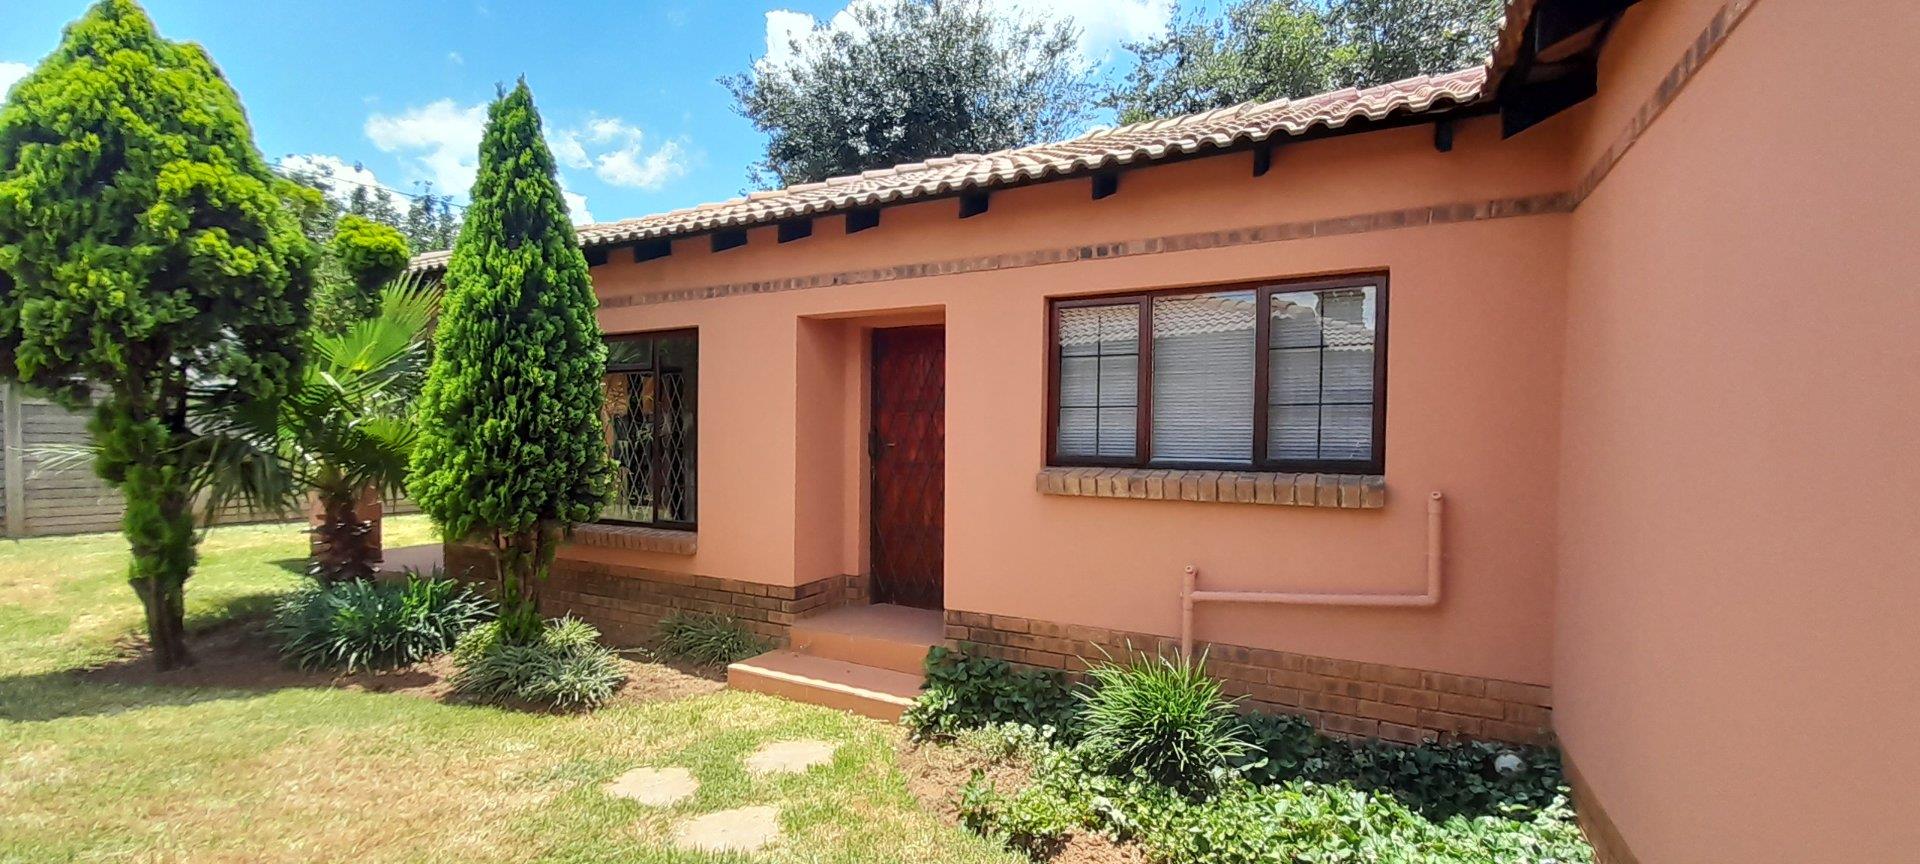 3 Bedroom House to rent in Delmas